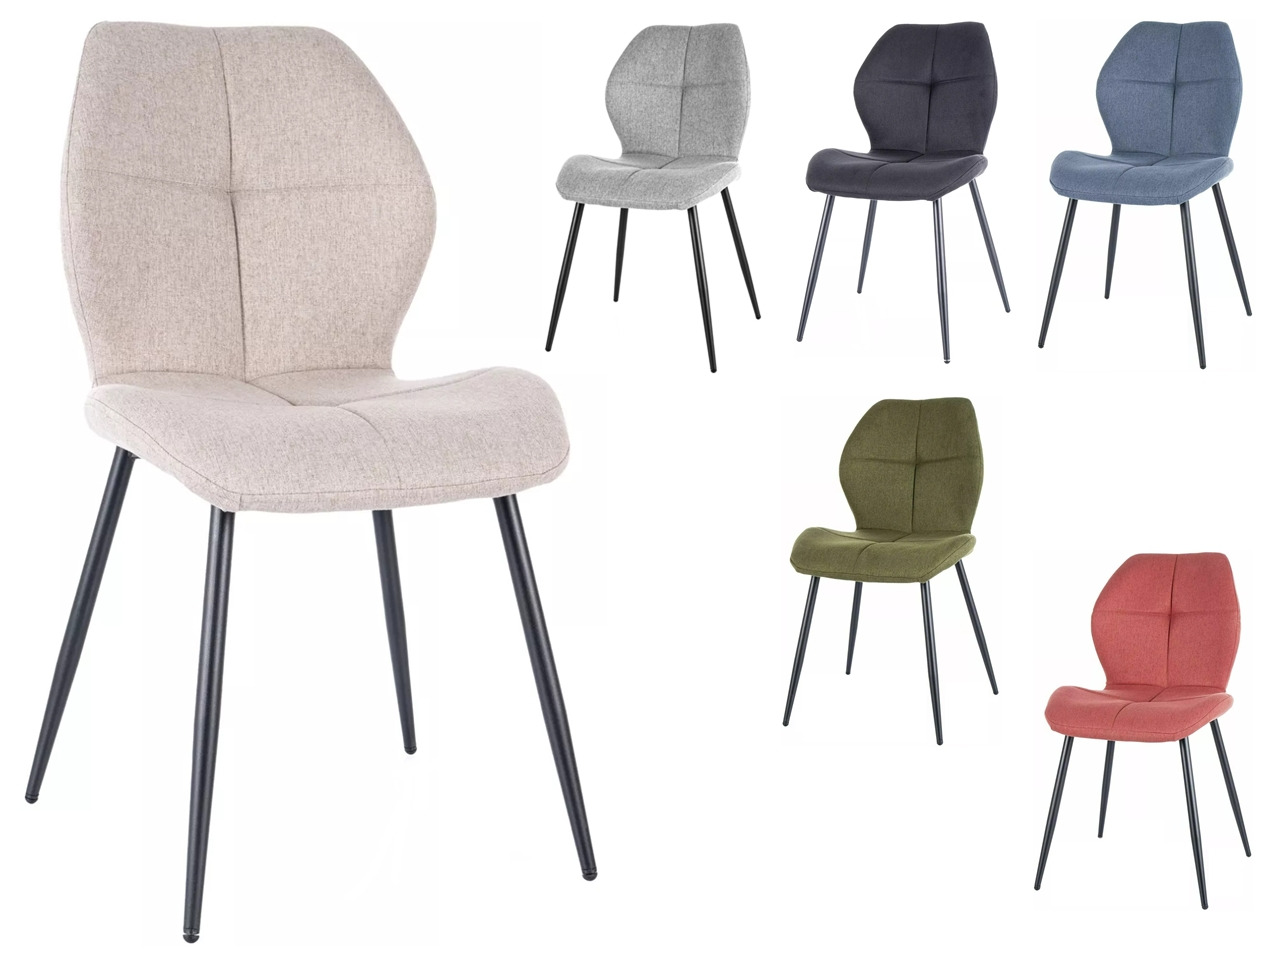 SIG-Frank NEA modern fémvázas szék